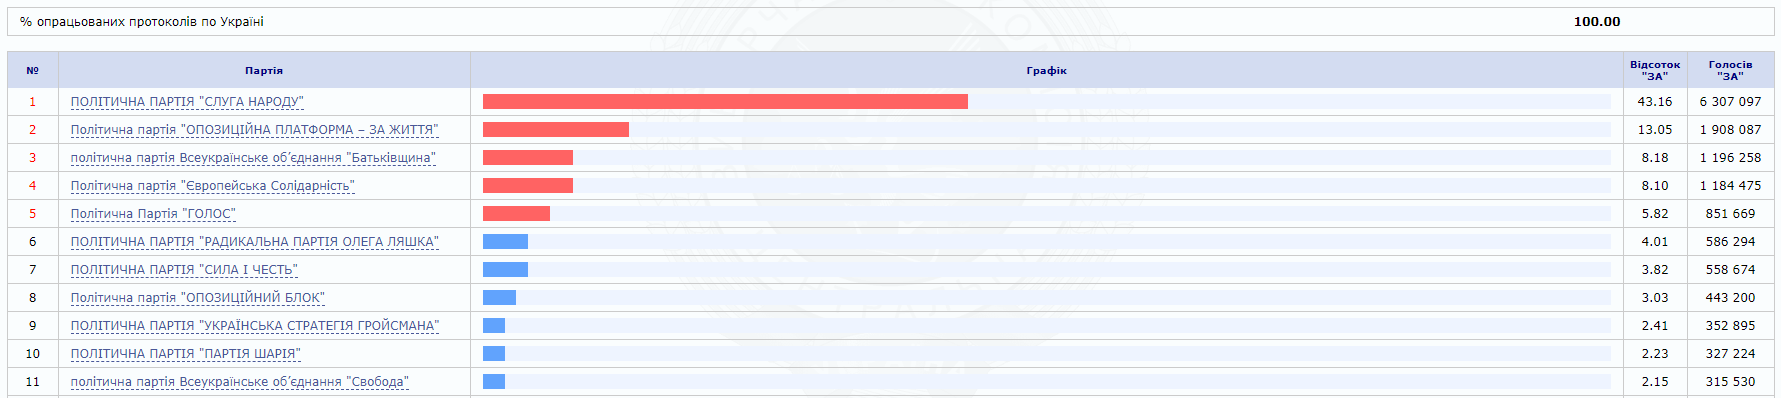 ЦИК подсчитала 100% голосов избирателей: результаты выборов в Раду - рис. 1